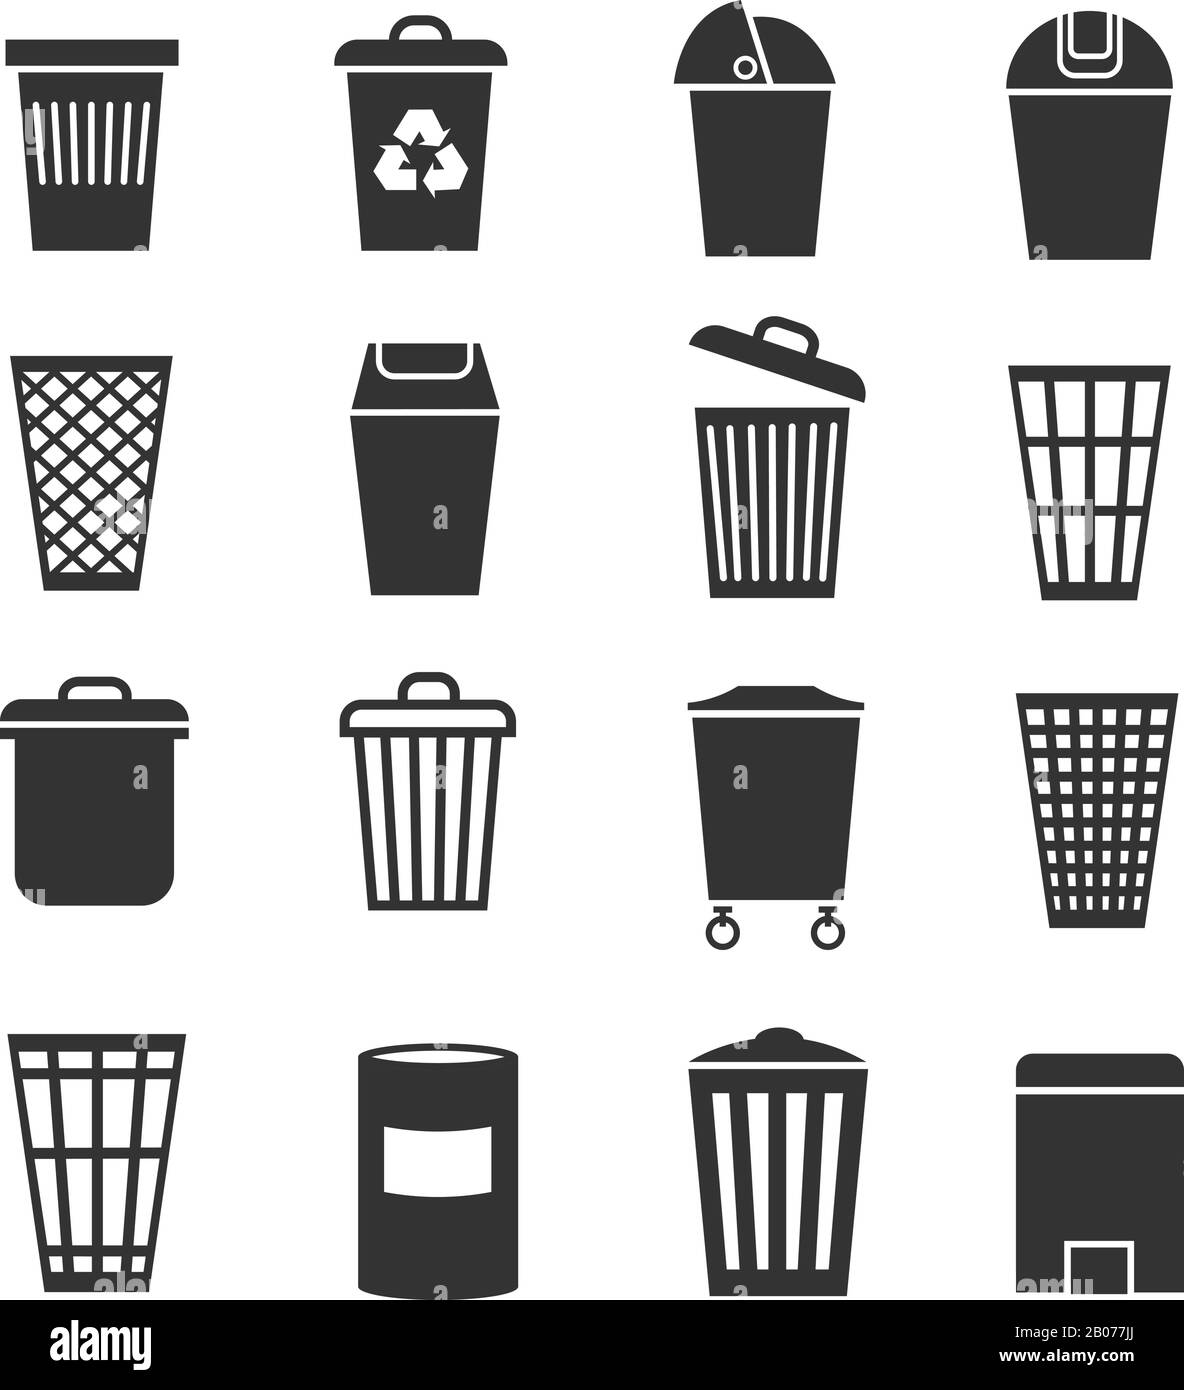 Papierkorb, Abfallkorb, Papierkorb, Vektorsymbole für Mülleimer. Mülleimer und Behälter, Abbildung mit Trashcan-Eimern Stock Vektor